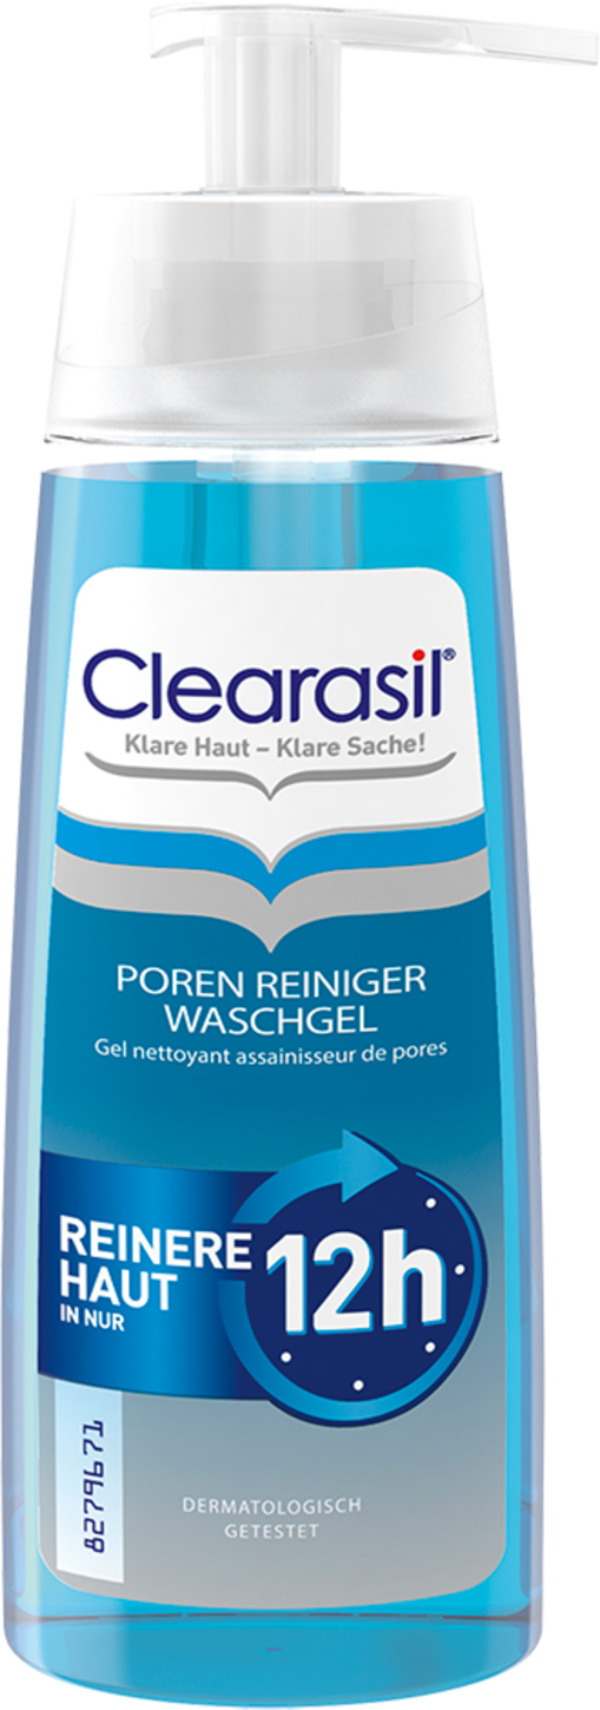 Bild 1 von Clearasil Poren Reiniger Waschgel